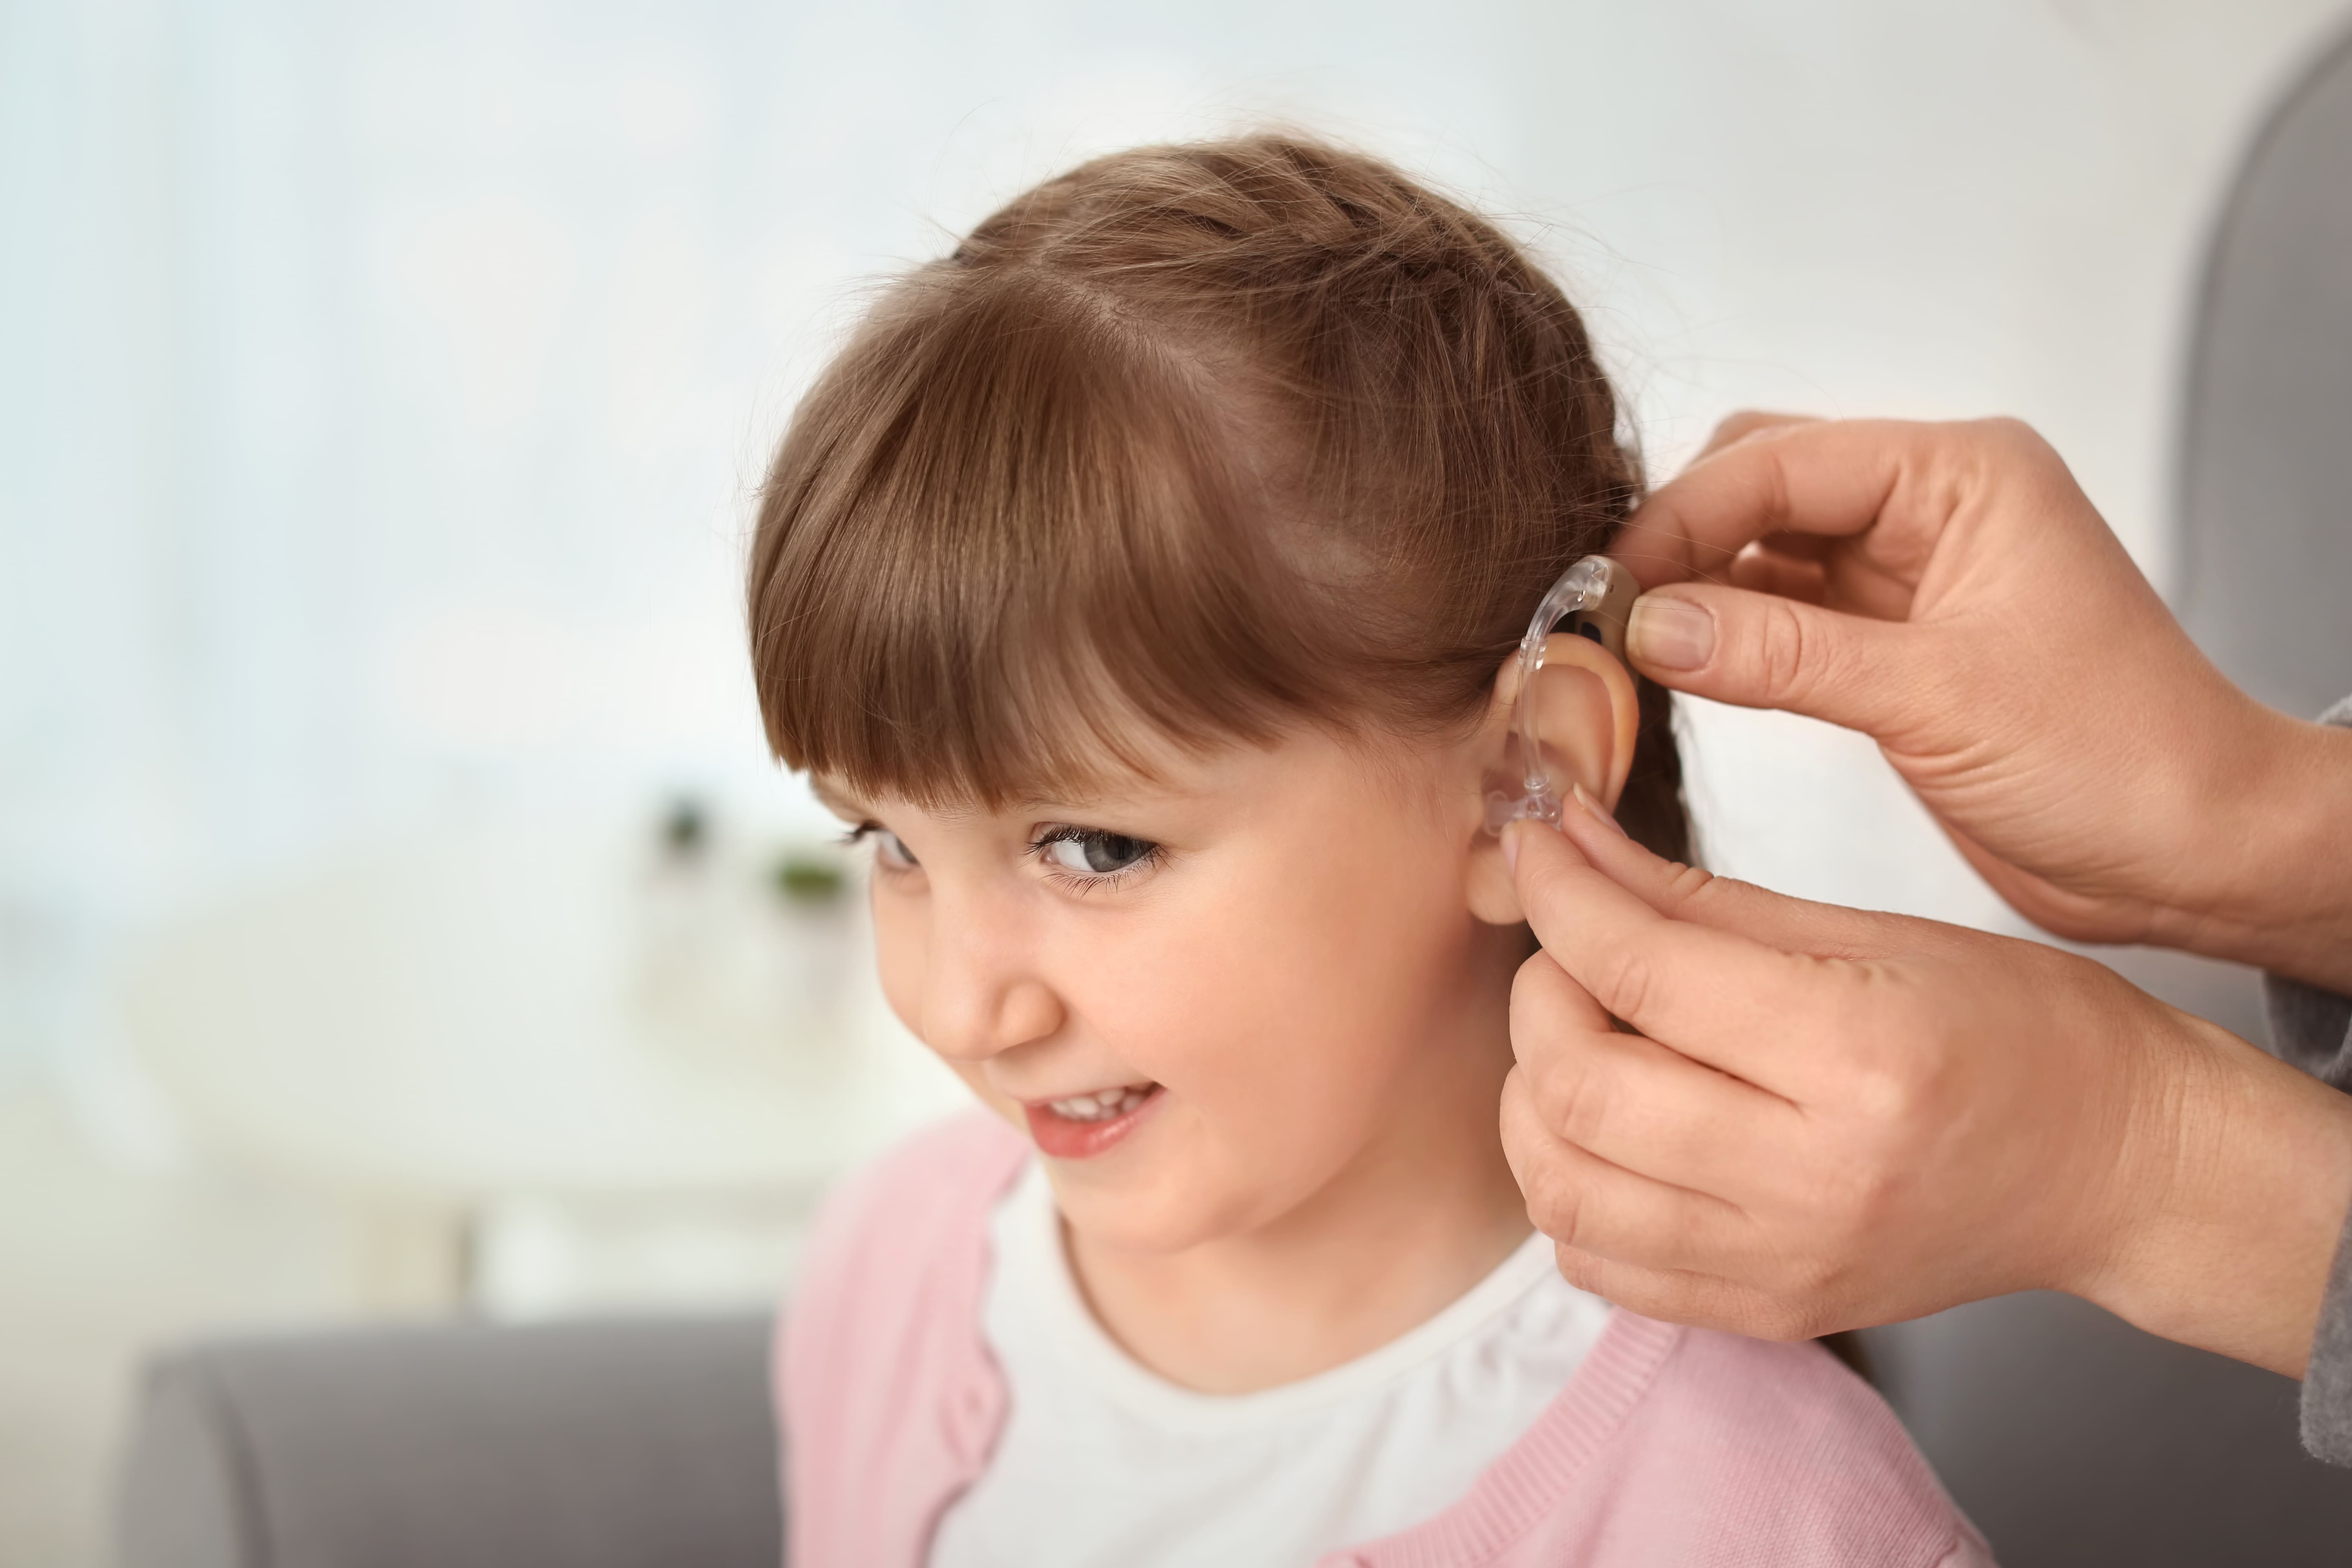 Слабослышащий ученик. Дети с нарушением слуха.. Ребёнок сос луховым аппаратом. Слуховой аппарат для детей. Девочка со слуховым аппаратом.